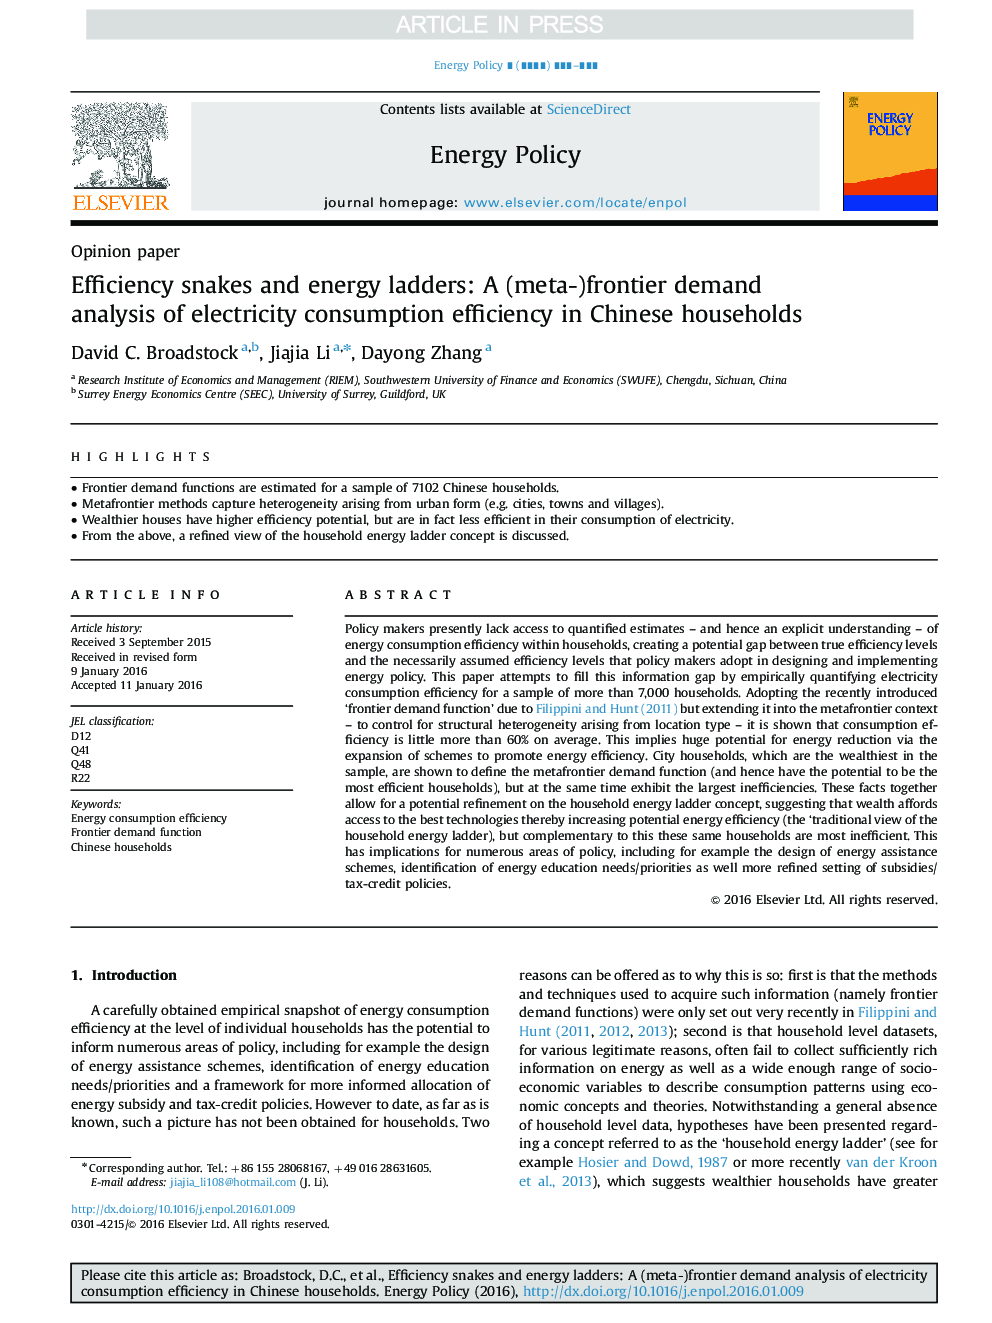 مارهای کارآیی و نردبان انرژی: تجزیه و تحلیل تقاضای مرزی (متا) از بازده مصرف برق در خانوارهای چینی 